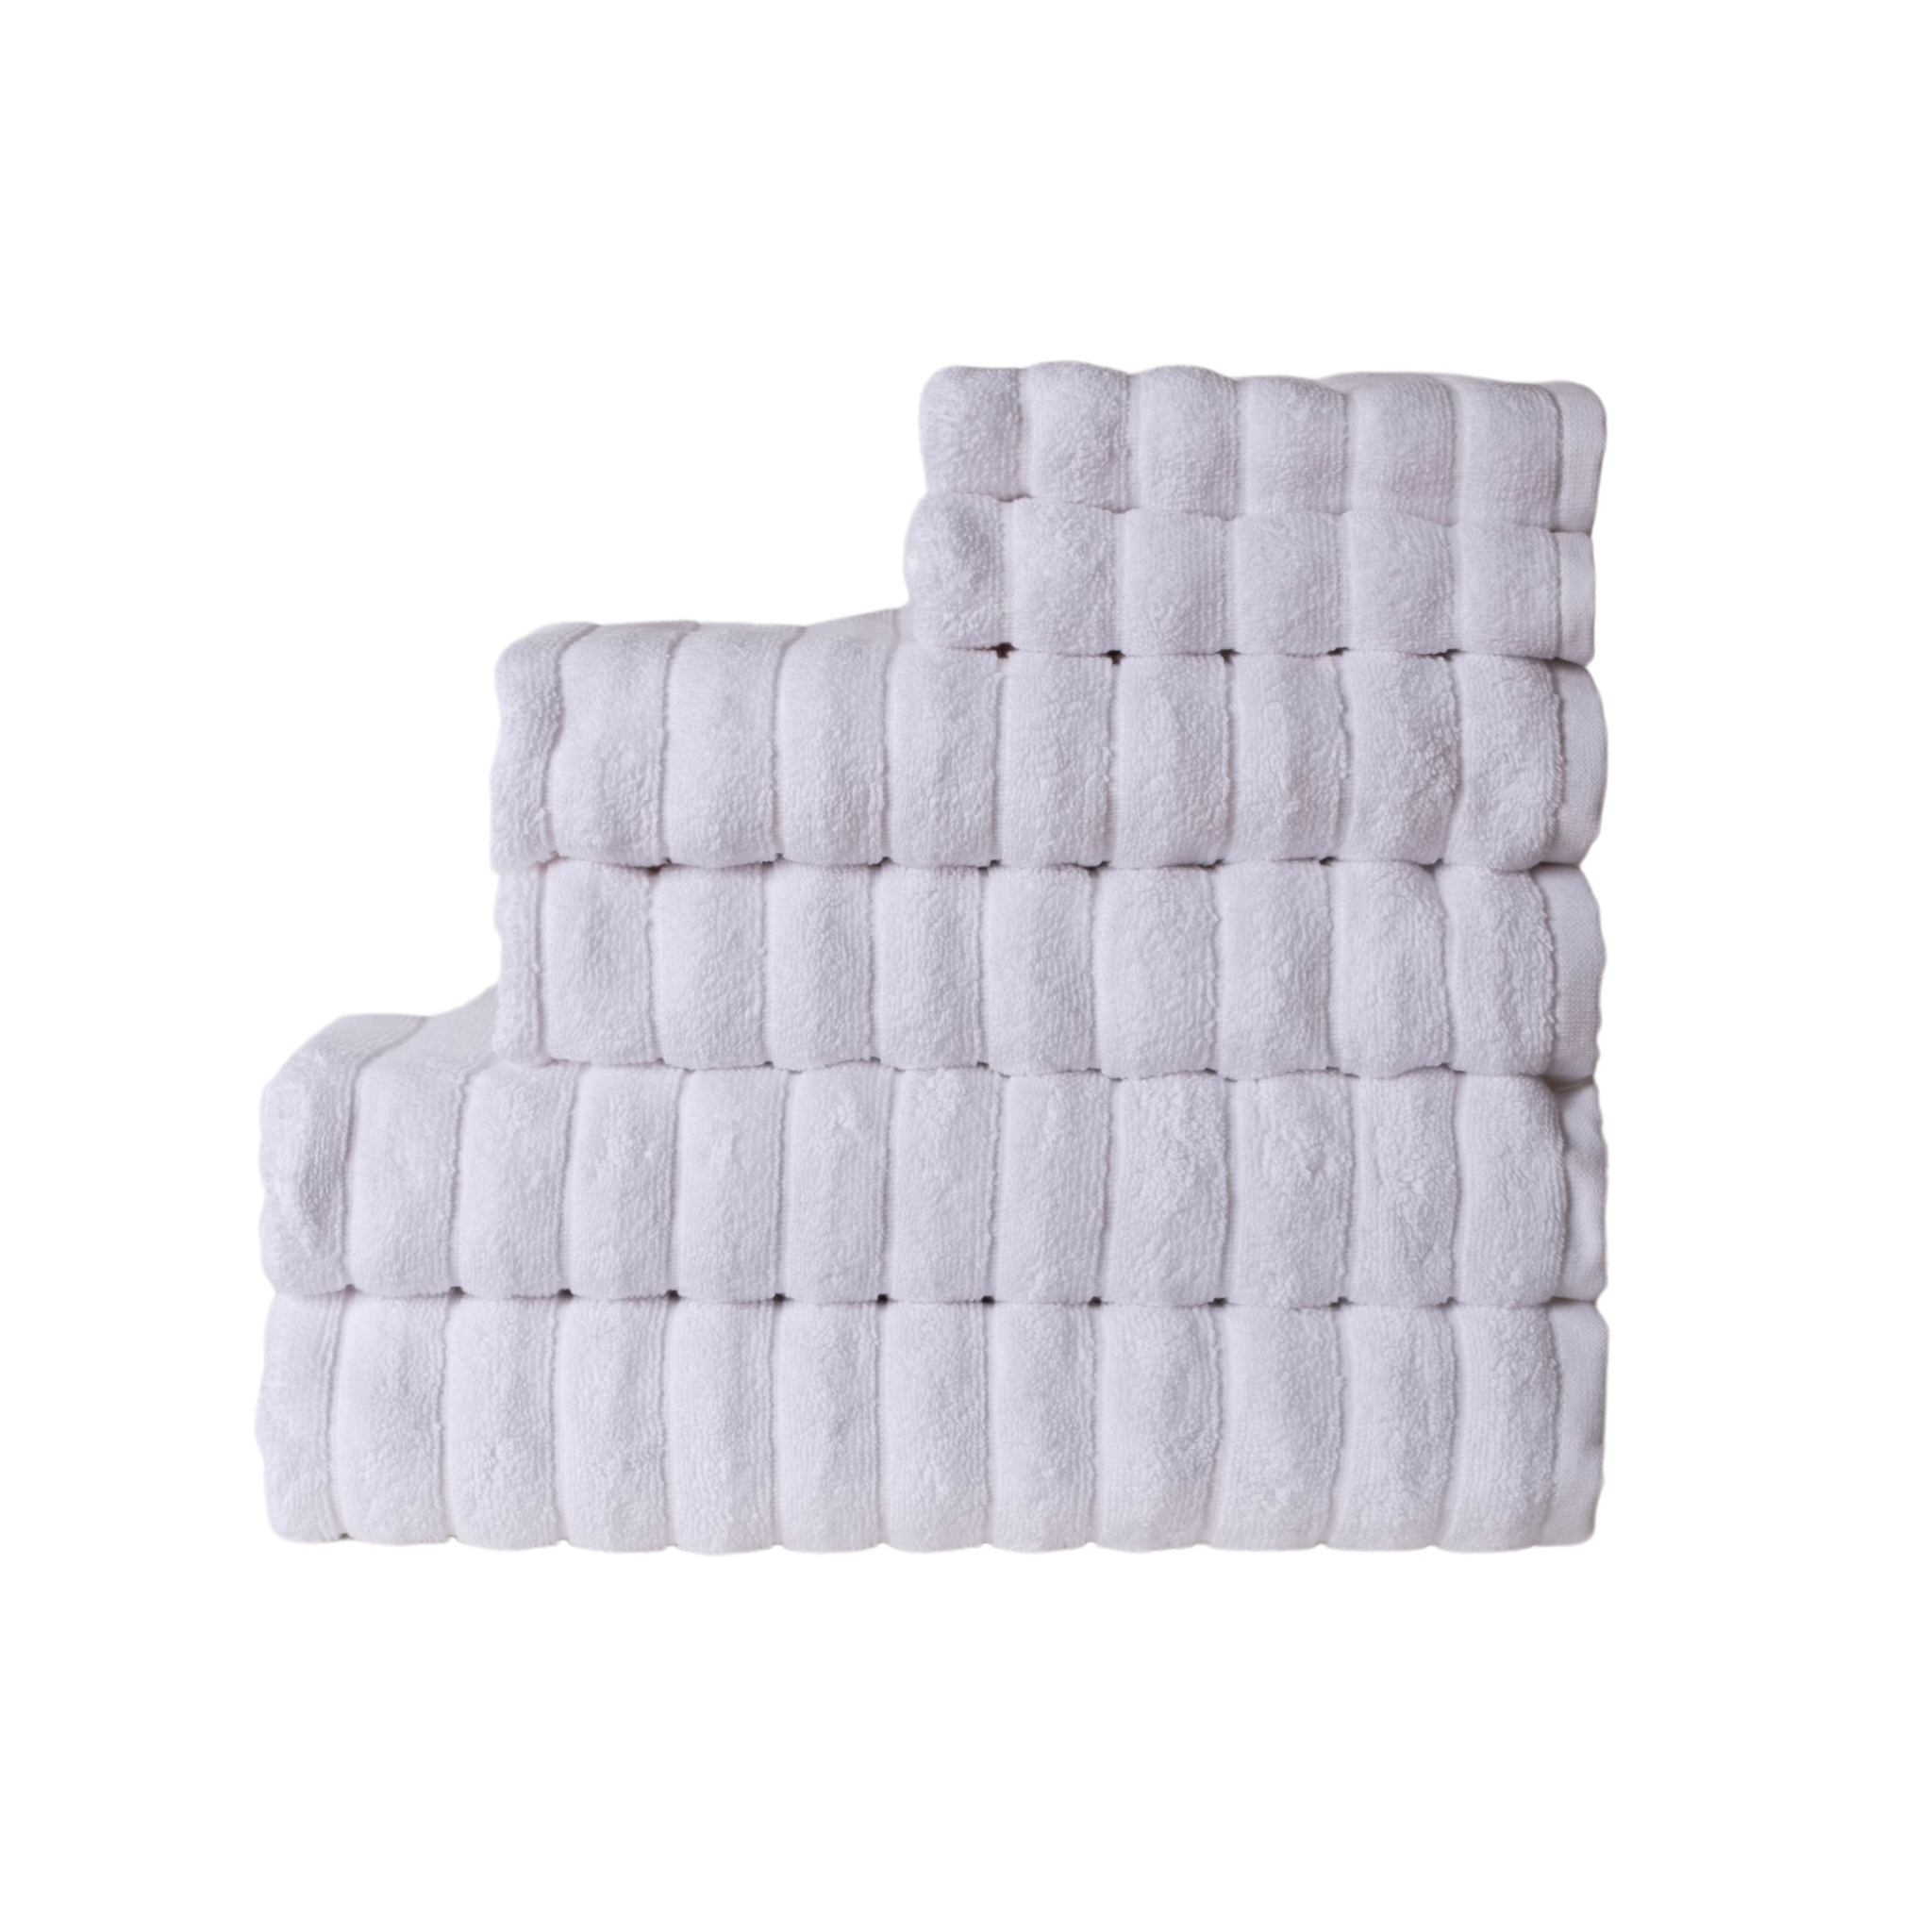 Brampton Towel Set 6 Pack White